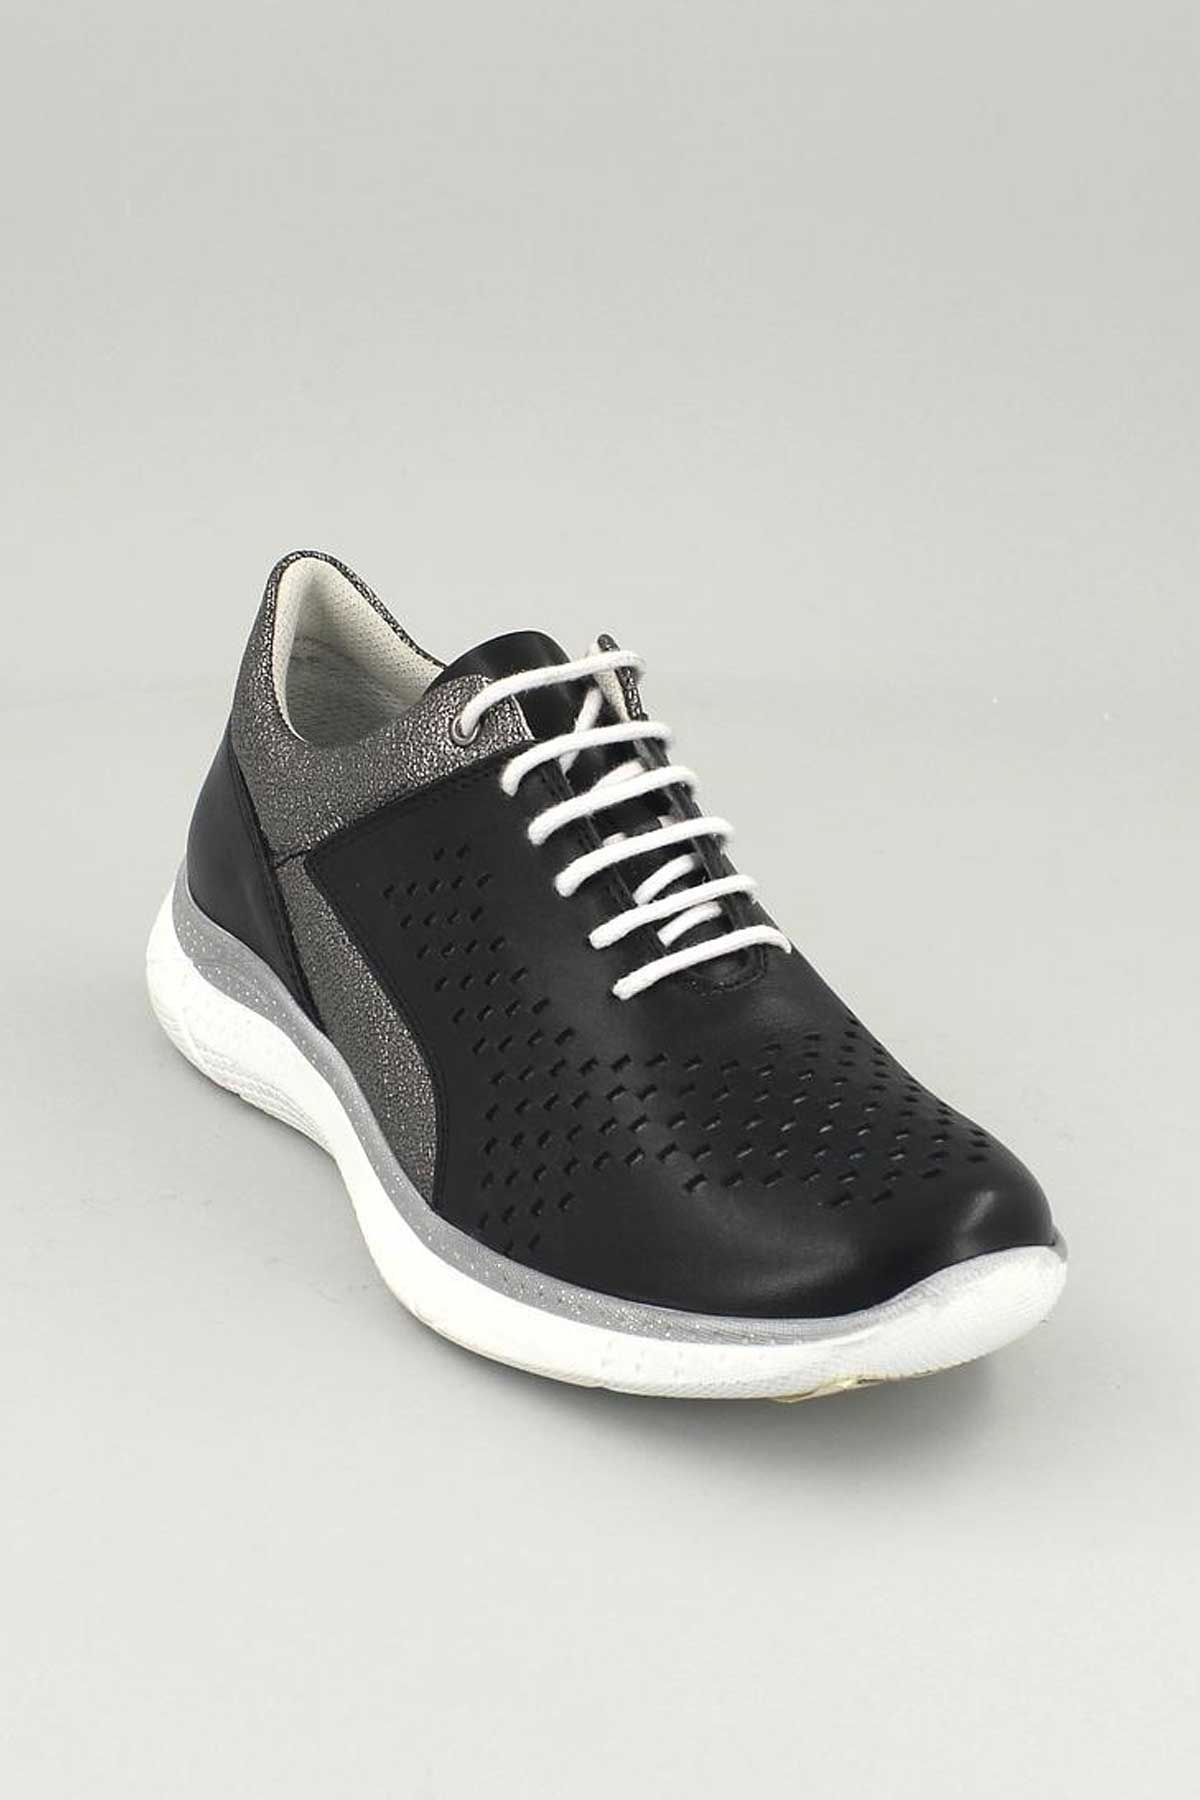 Kadın Deri Sneakers Siyah 13785Y - Thumbnail